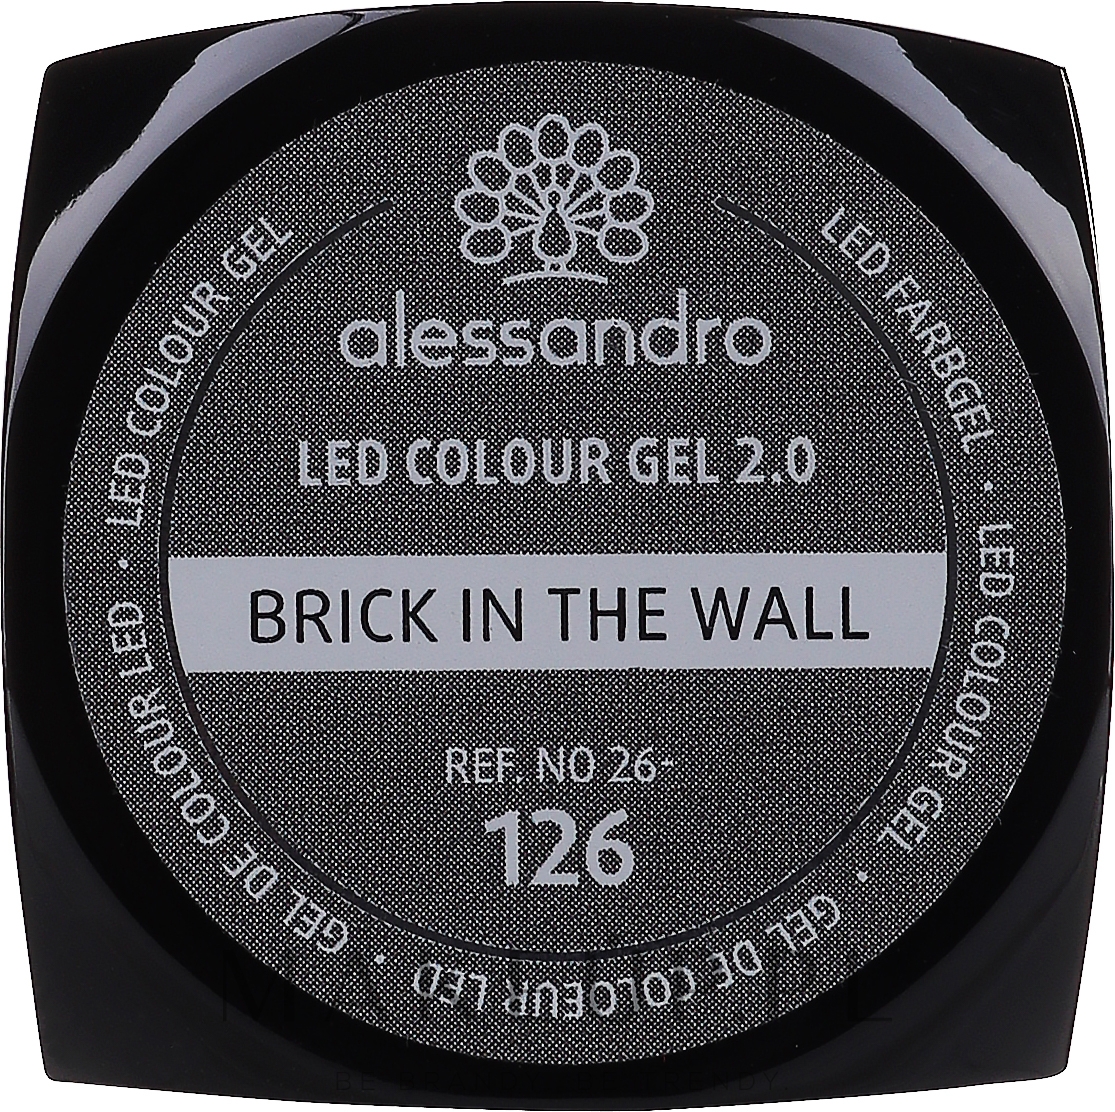 Żel do paznokci - Alessandro International LED Colour Gel 2.0 — Zdjęcie 126 - Brick In The Wall